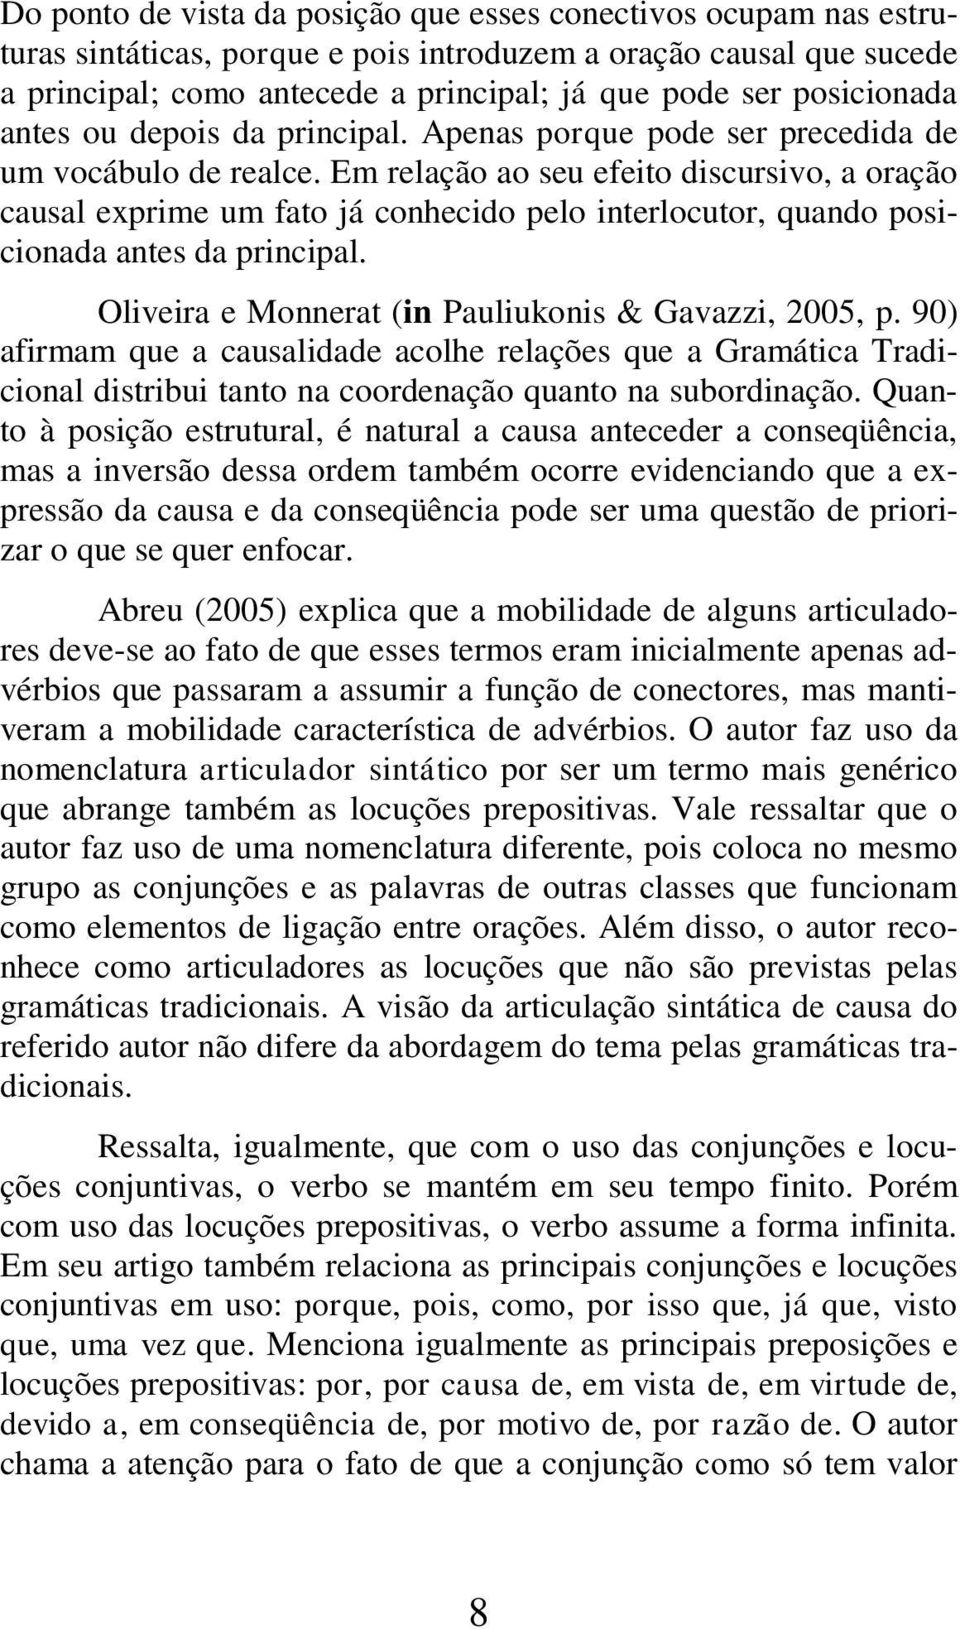 Em relação ao seu efeito discursivo, a oração causal exprime um fato já conhecido pelo interlocutor, quando posicionada antes da principal. Oliveira e Monnerat (in Pauliukonis & Gavazzi, 2005, p.